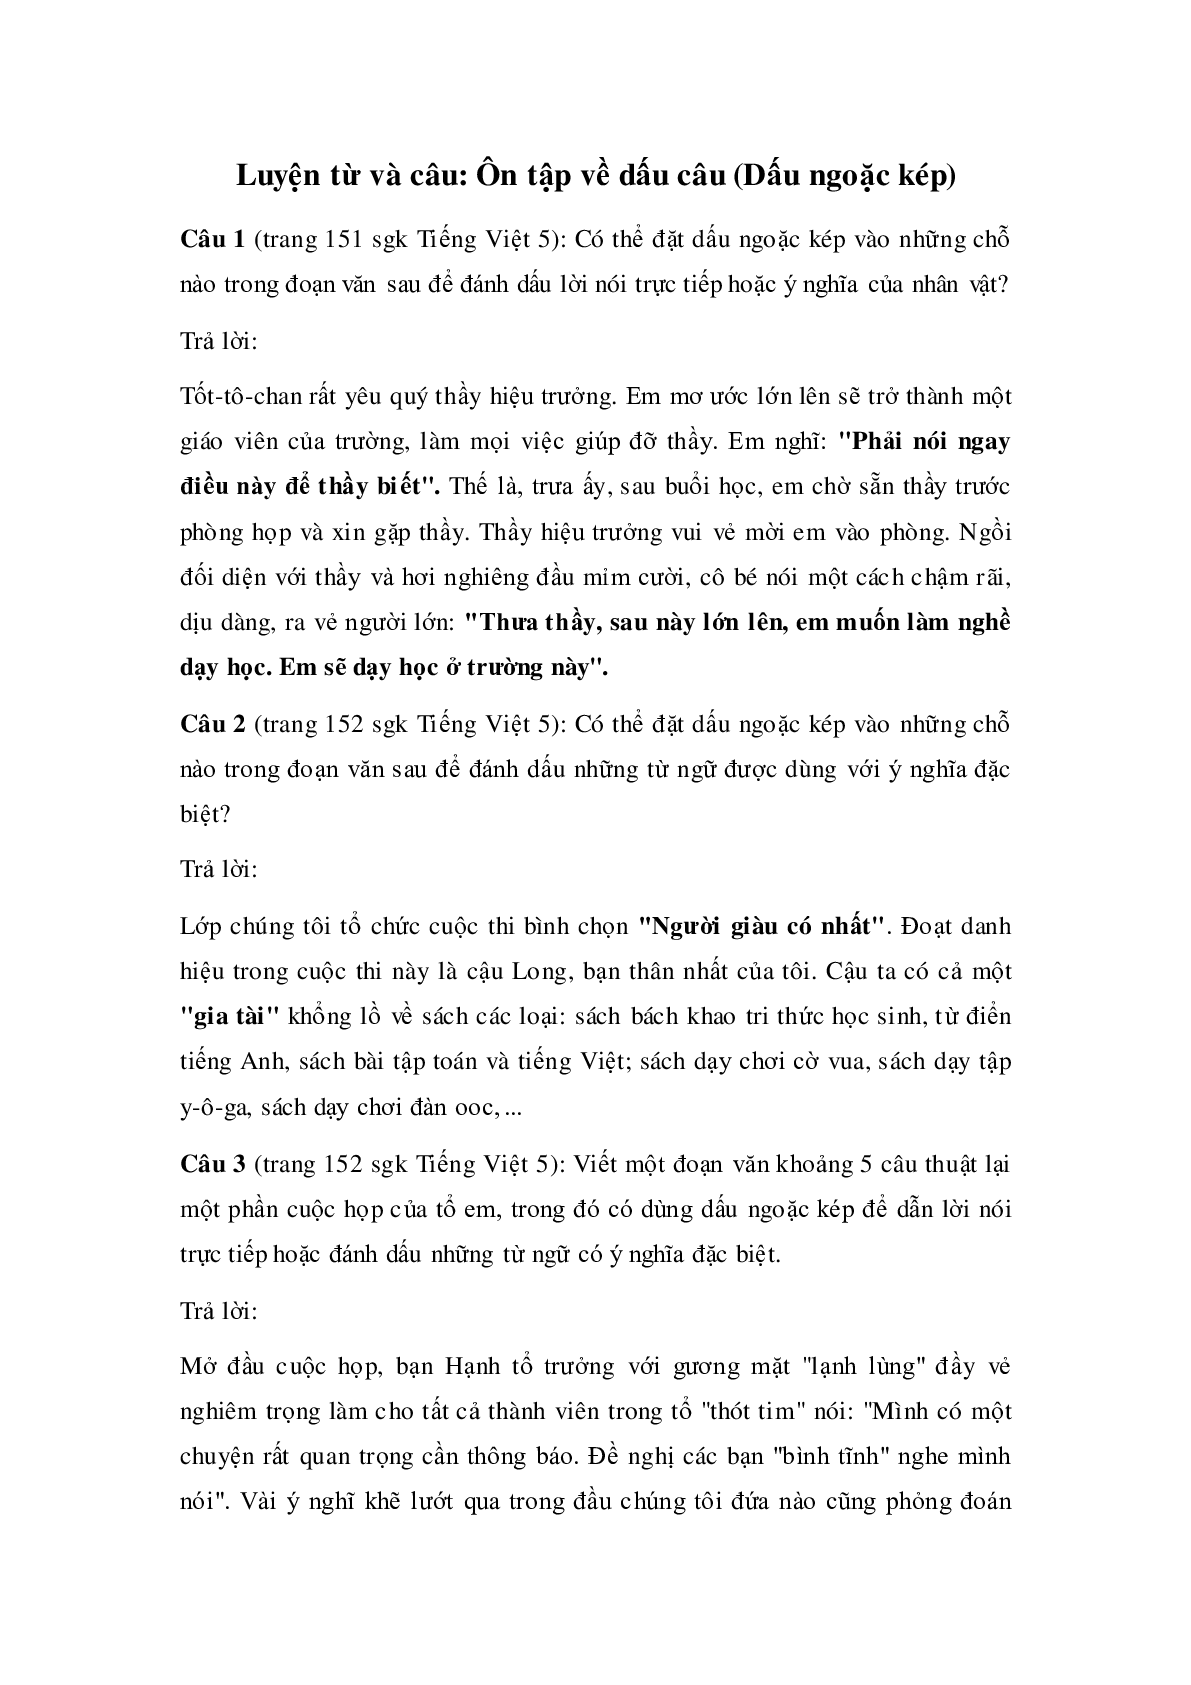 Soạn Tiếng Việt lớp 5: Luyện từ và câu: Ôn tập về dấu câu (Dấu ngoặc kép) mới nhất (trang 1)